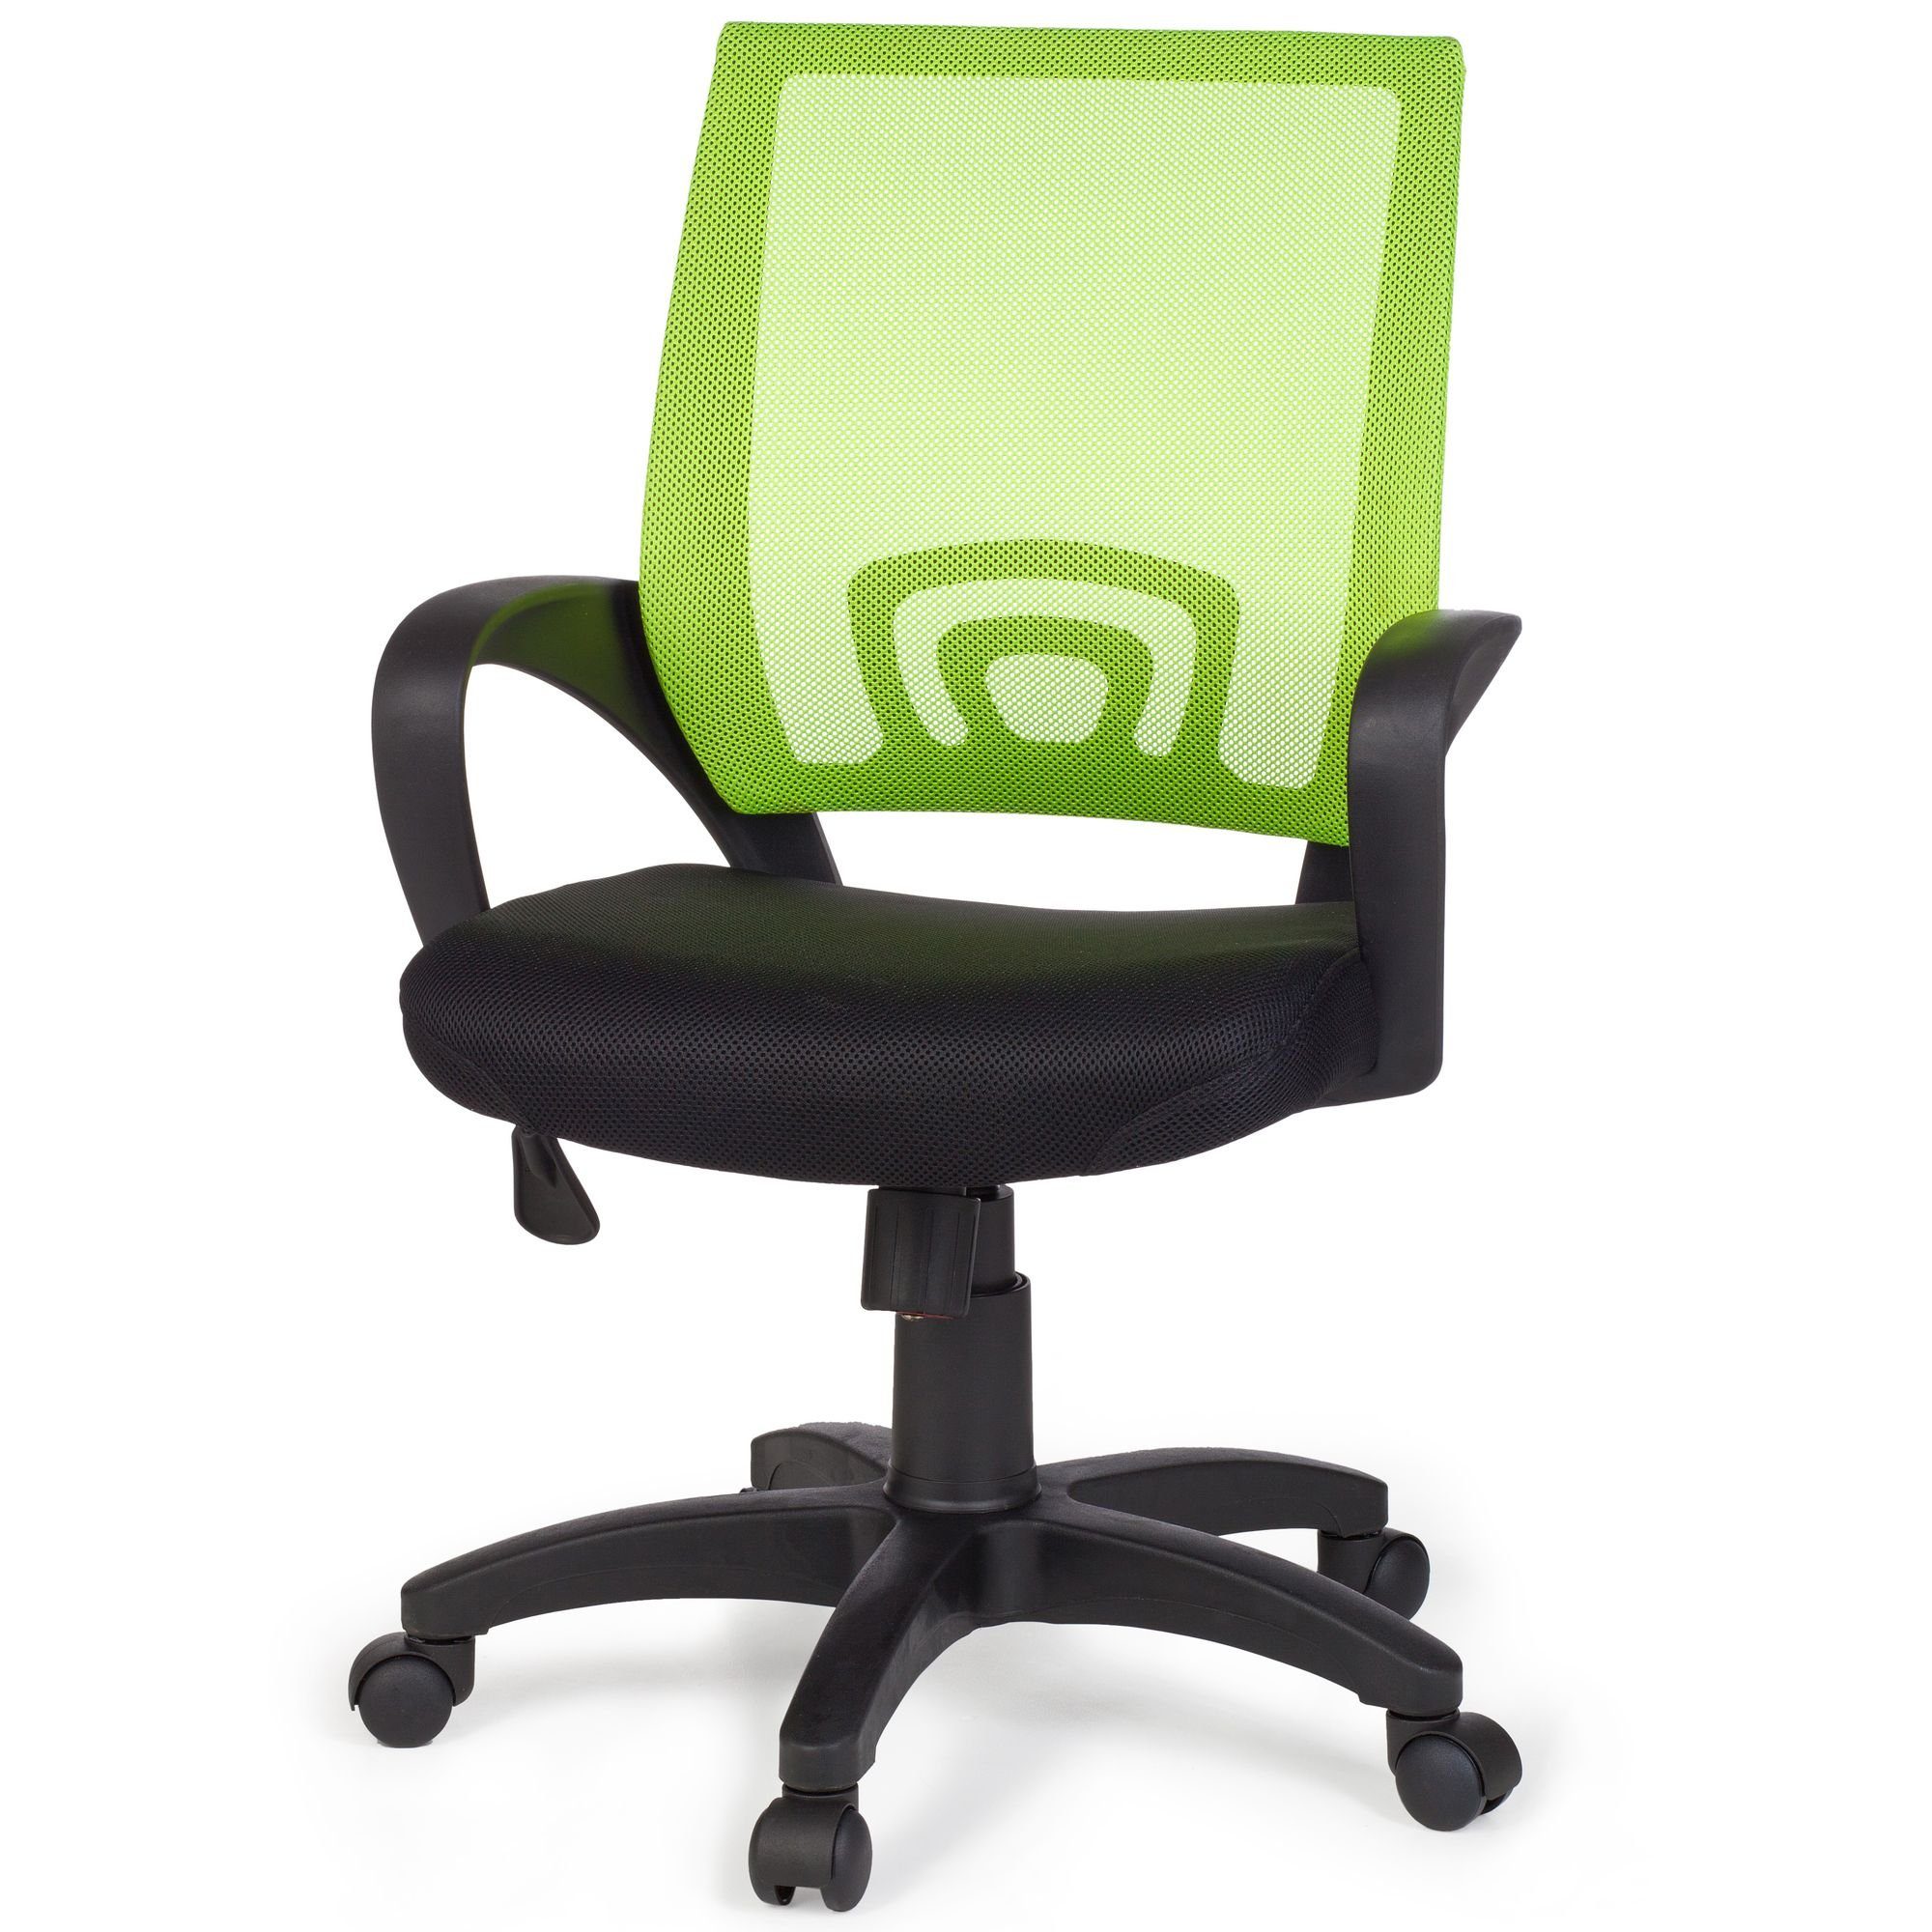 FINEBUY Drehstuhl SuVa1030_1 (Bürostuhl Grün Grün Schreibtischstuhl ergonomisch | mit Armlehne), Grün Jugendstuhl Bürodrehstuhl